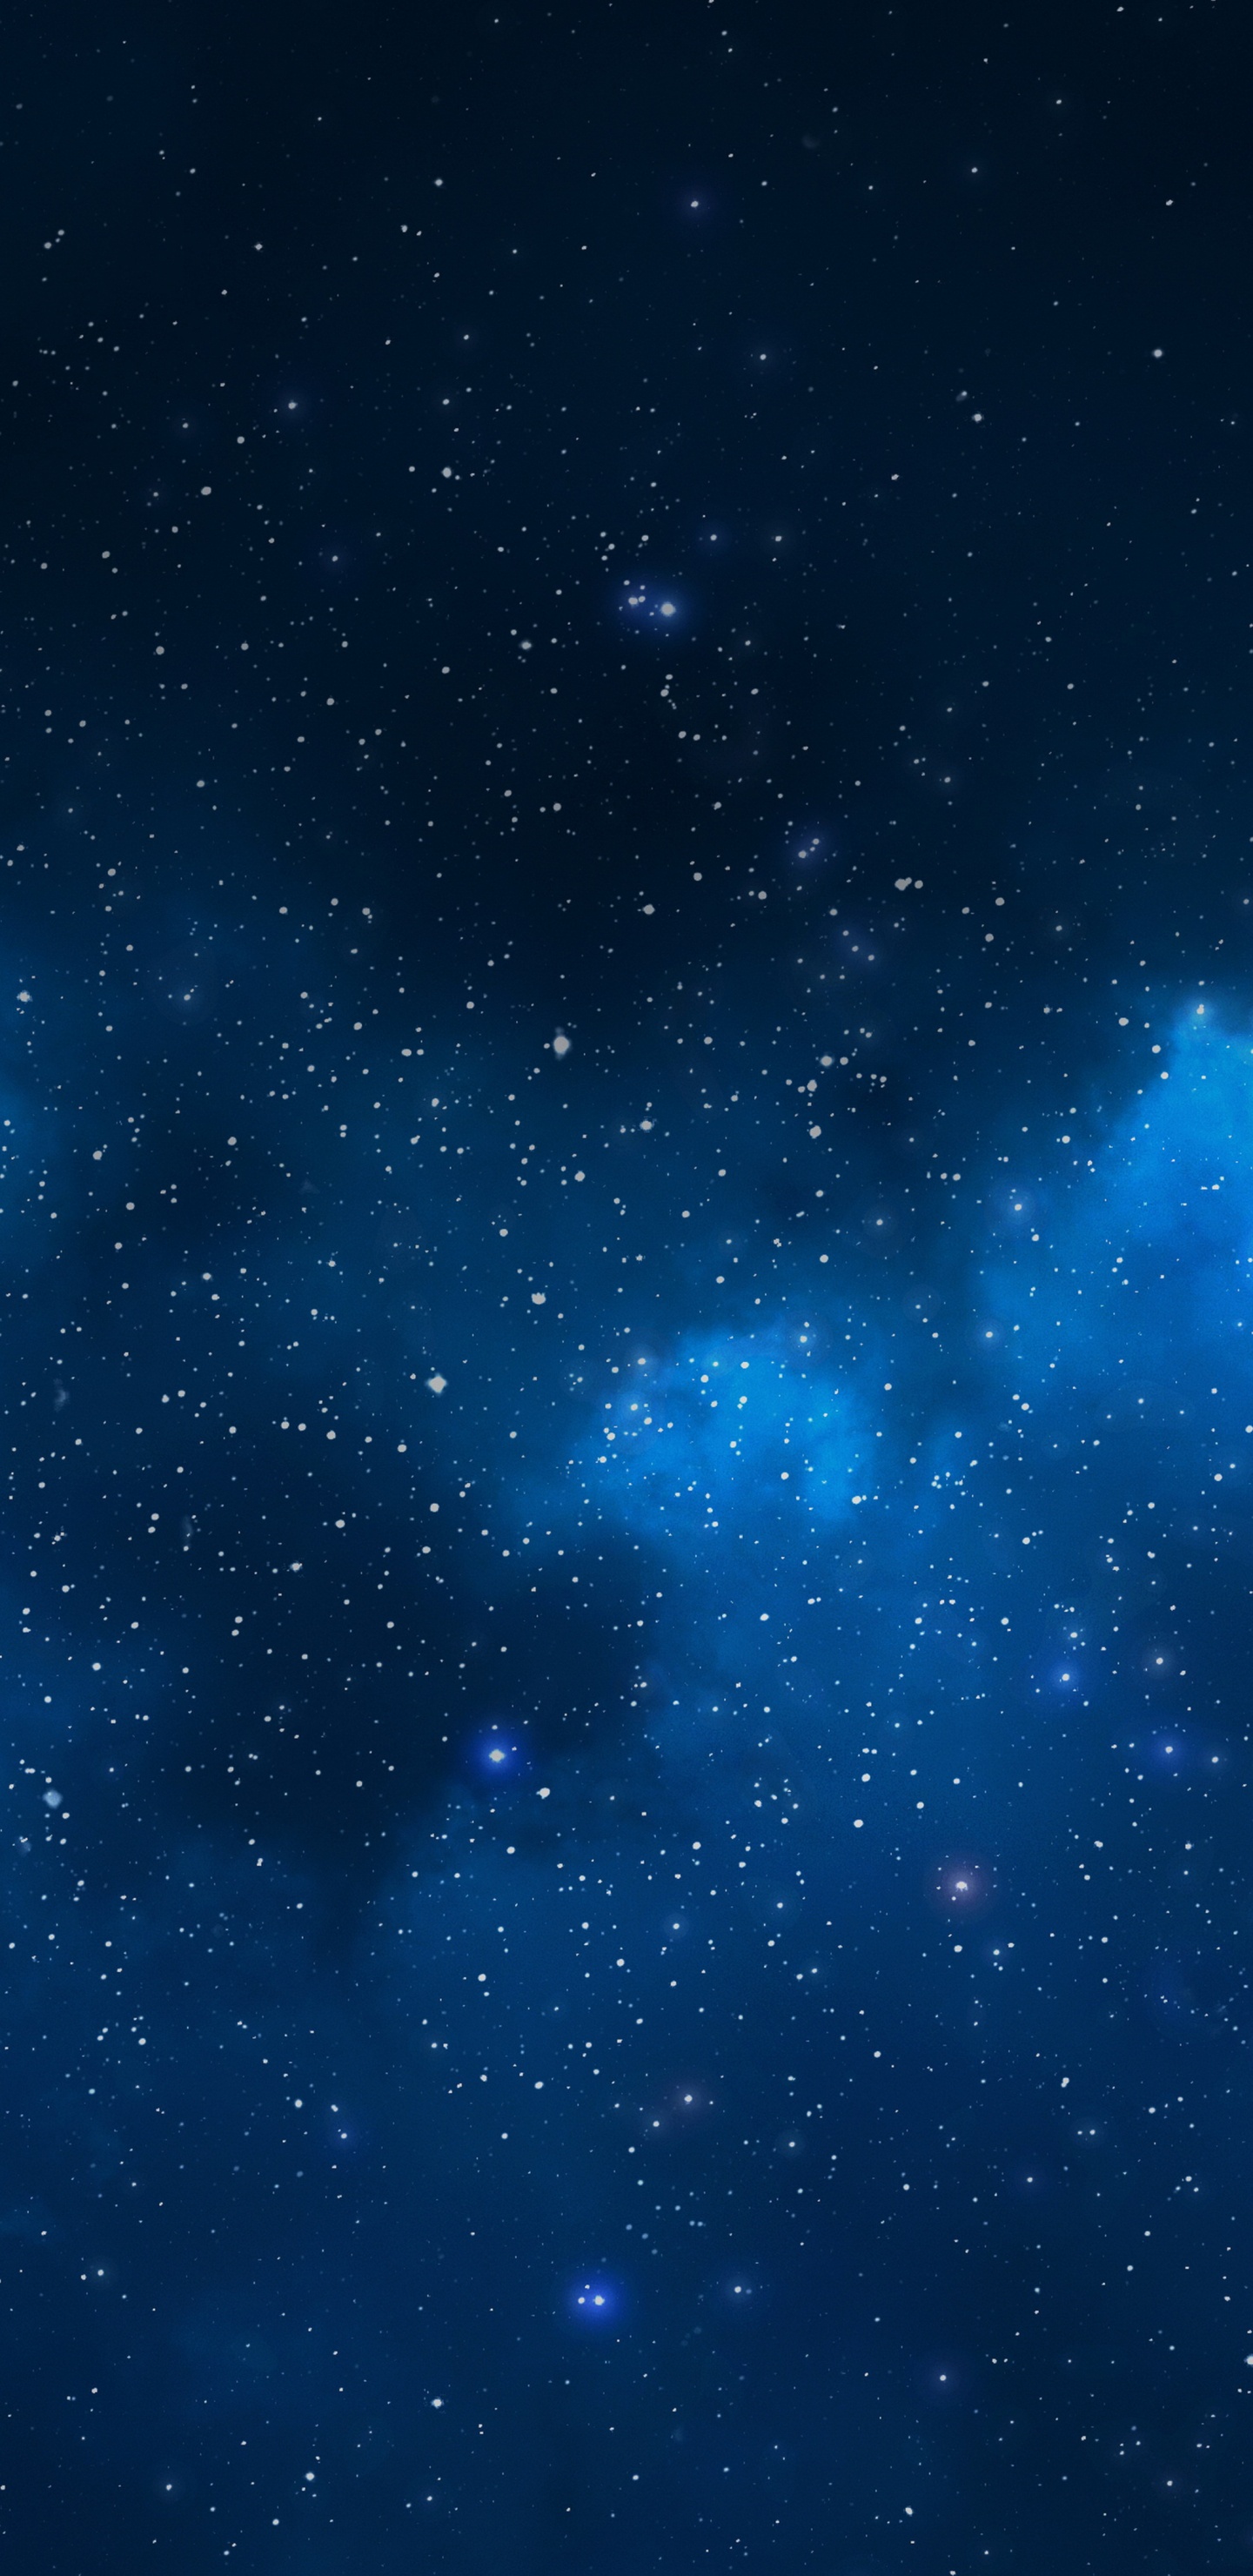 天文学对象, 外层空间, 空间, 夜晚的天空, 明星 壁纸 1440x2960 允许